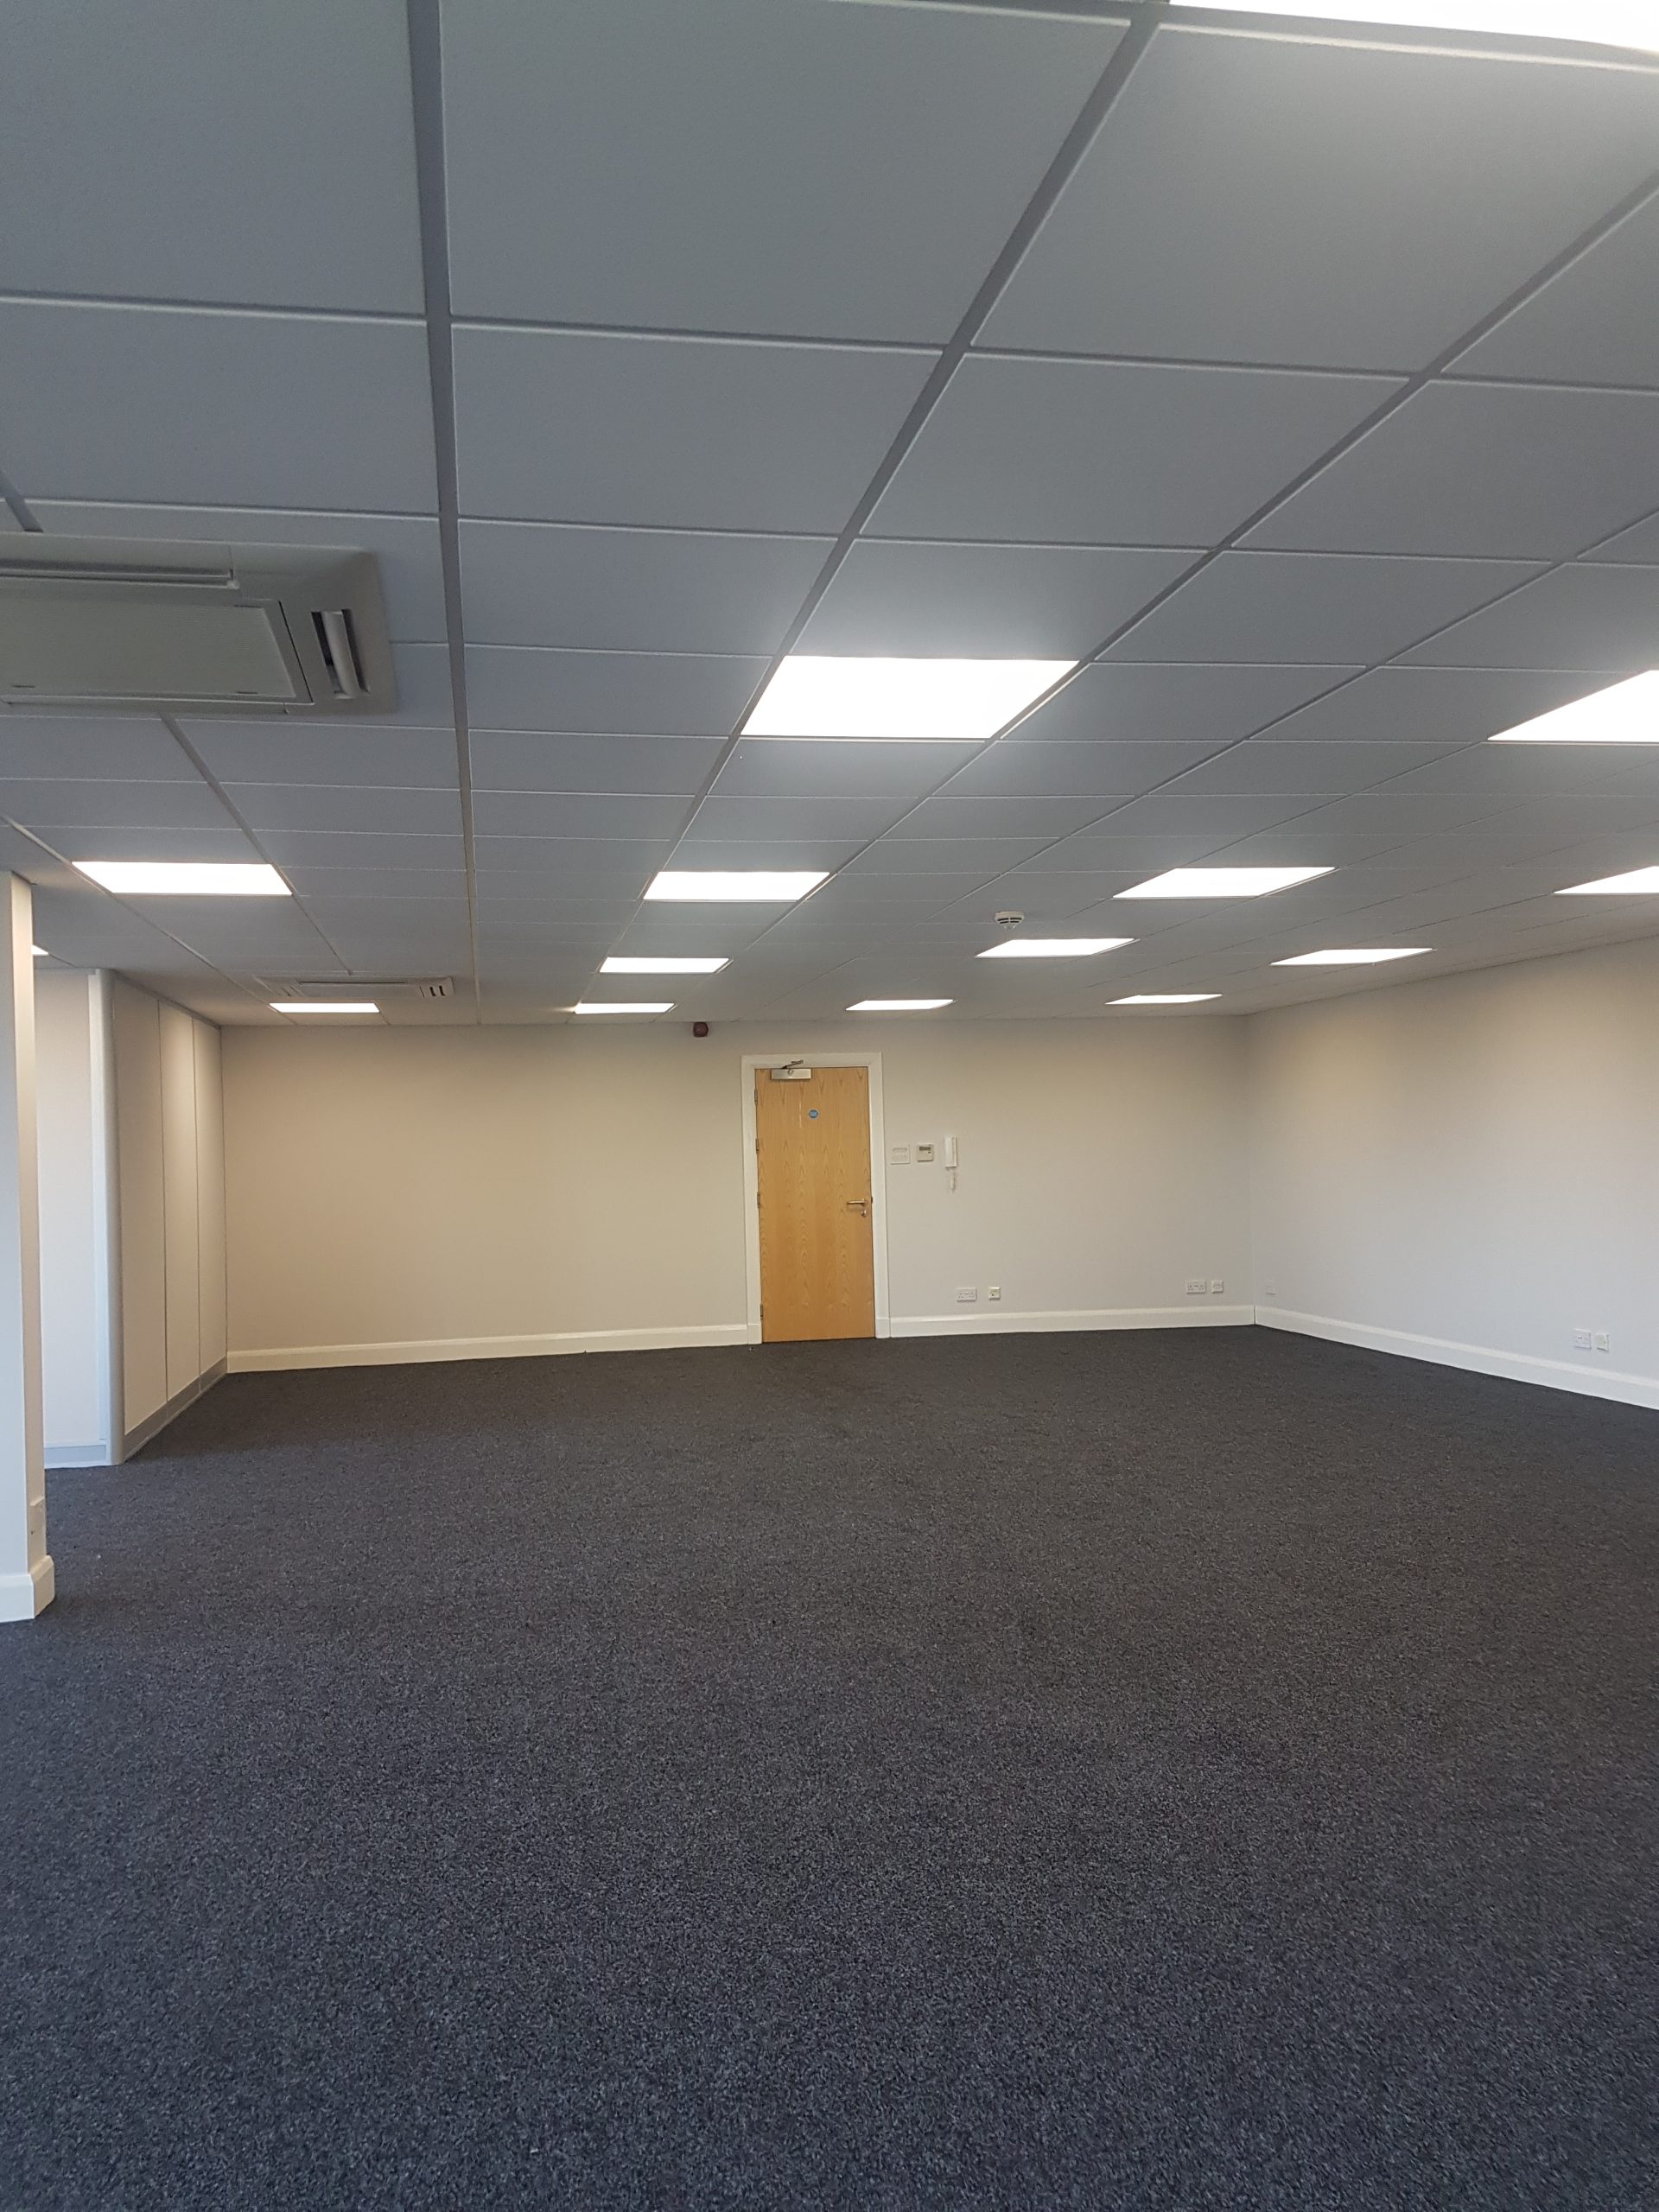 Castlecroft King James 1,600 sqft Office Suite